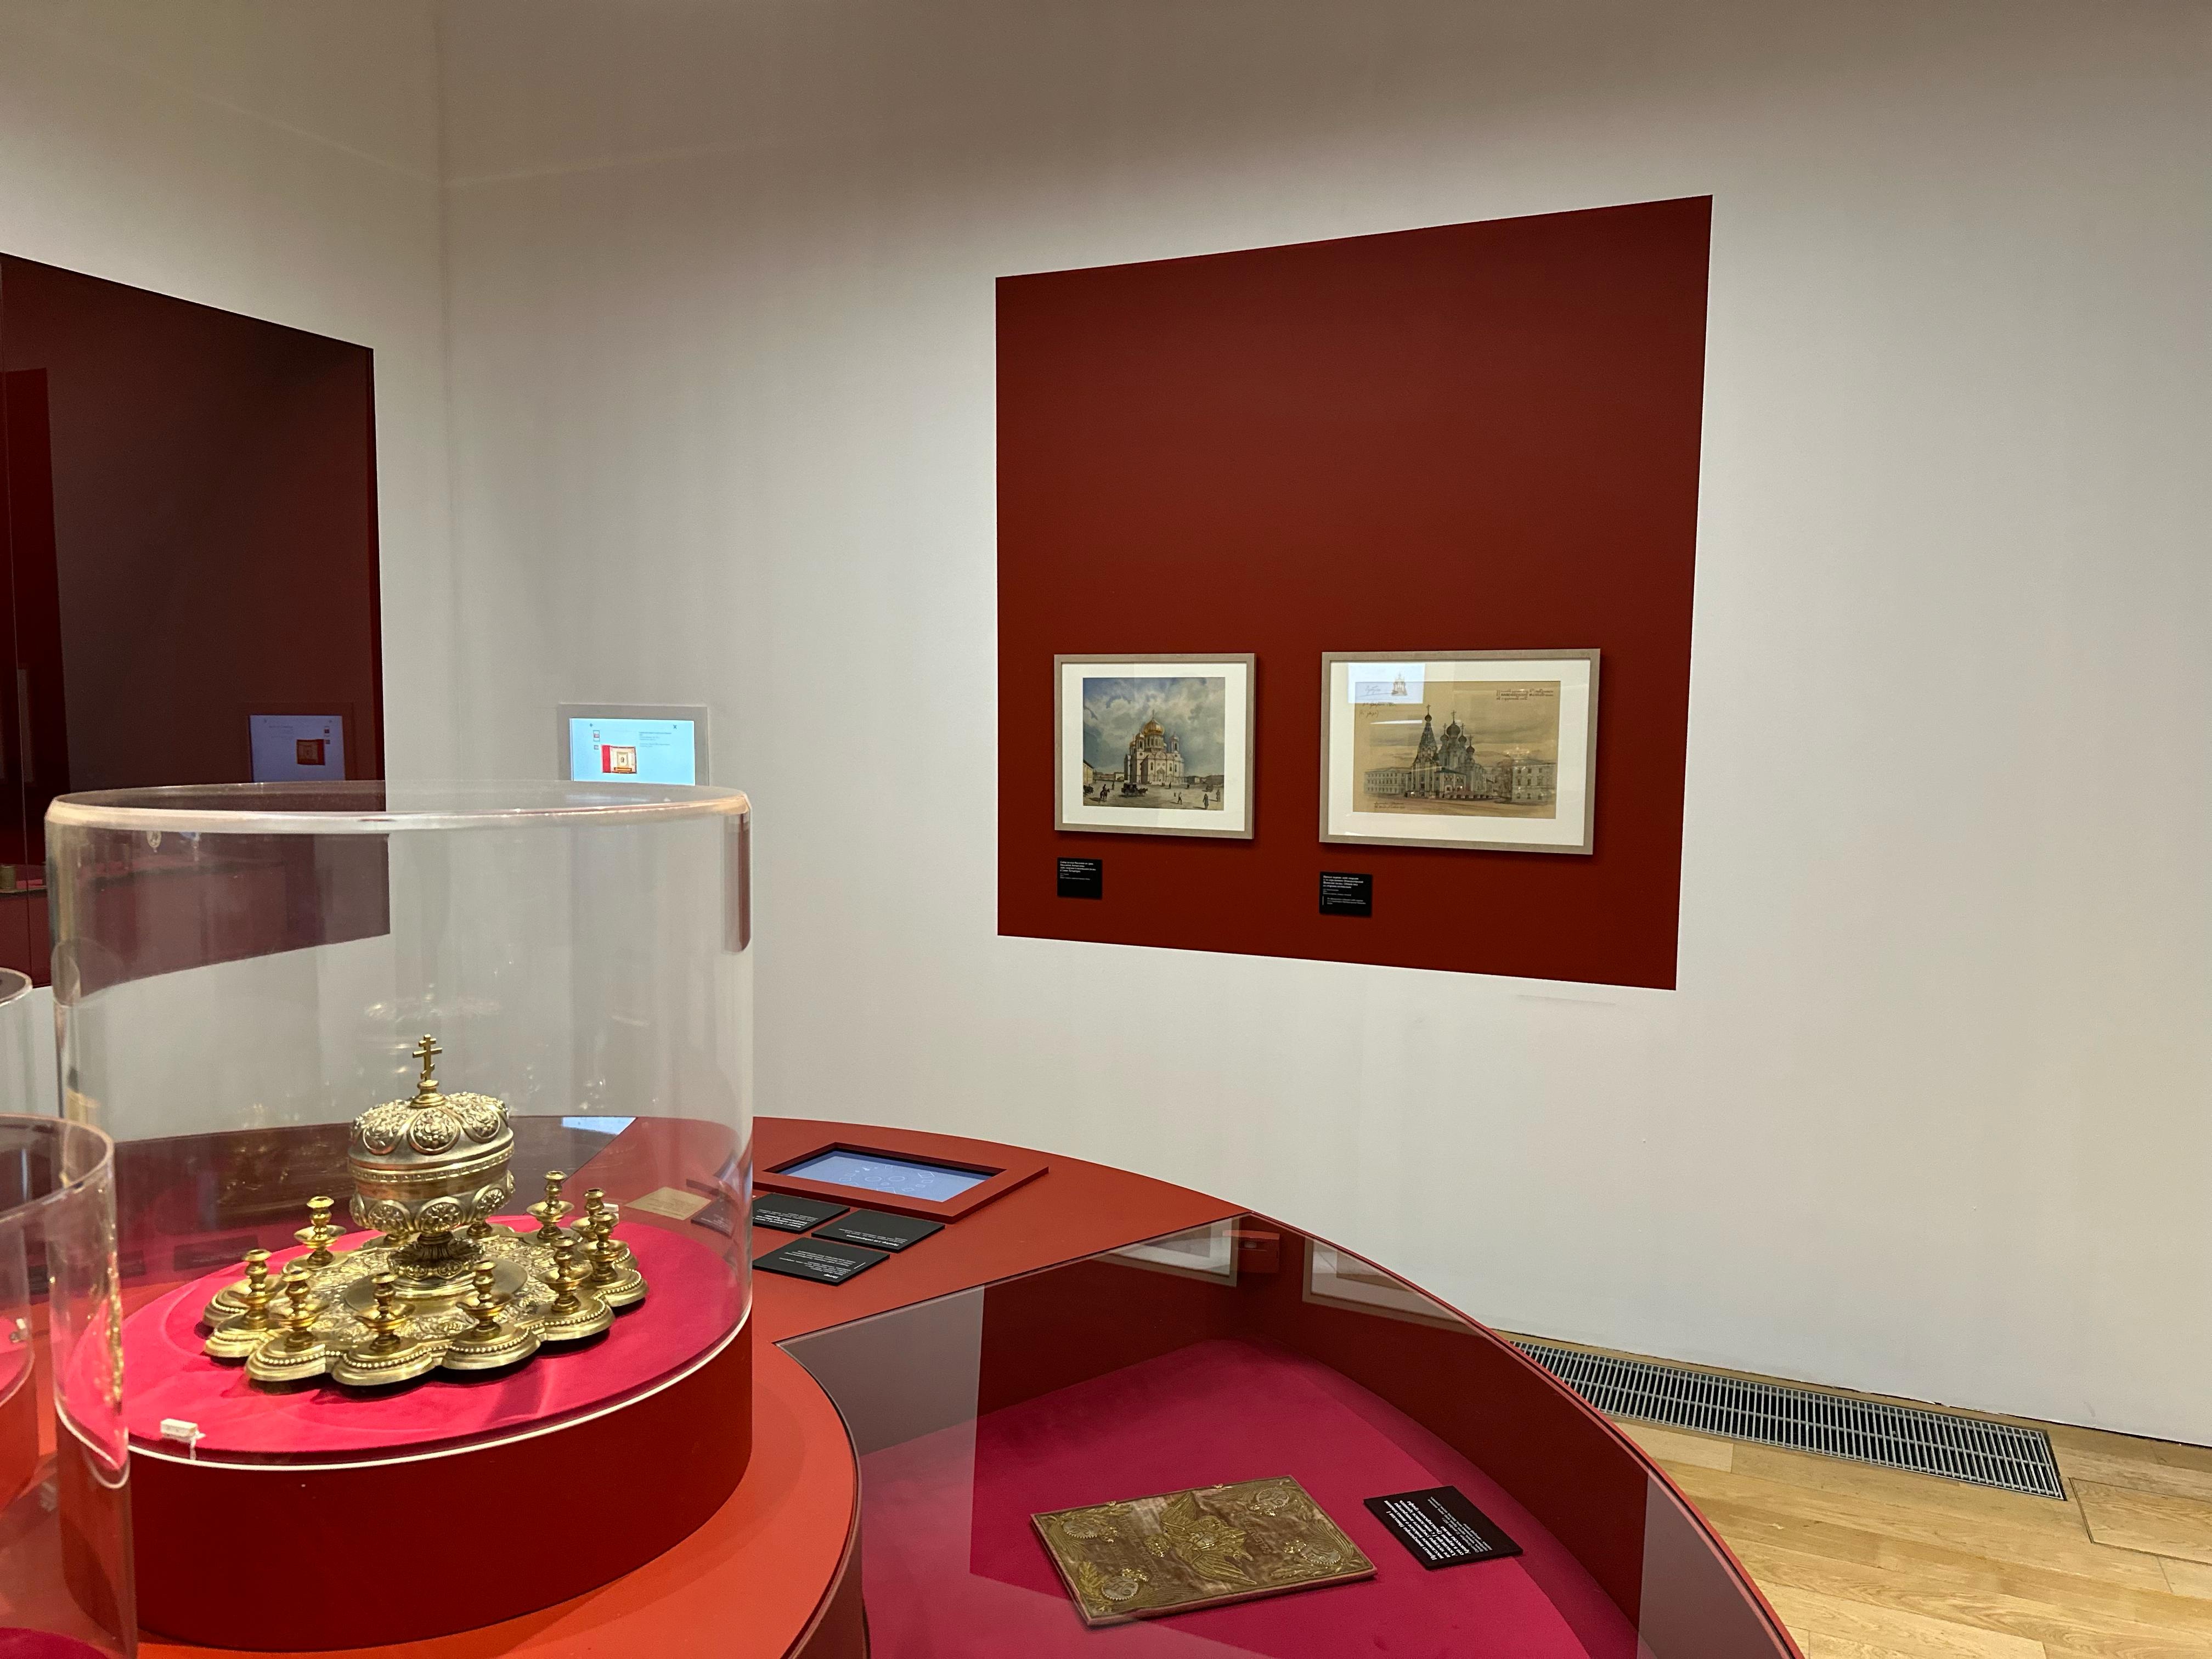 Фрагмент экспозиции «Сокровища полковых музеев» в ГИМ. Стены окрашены в оттенок Bronze Red LG15, Little Greene.